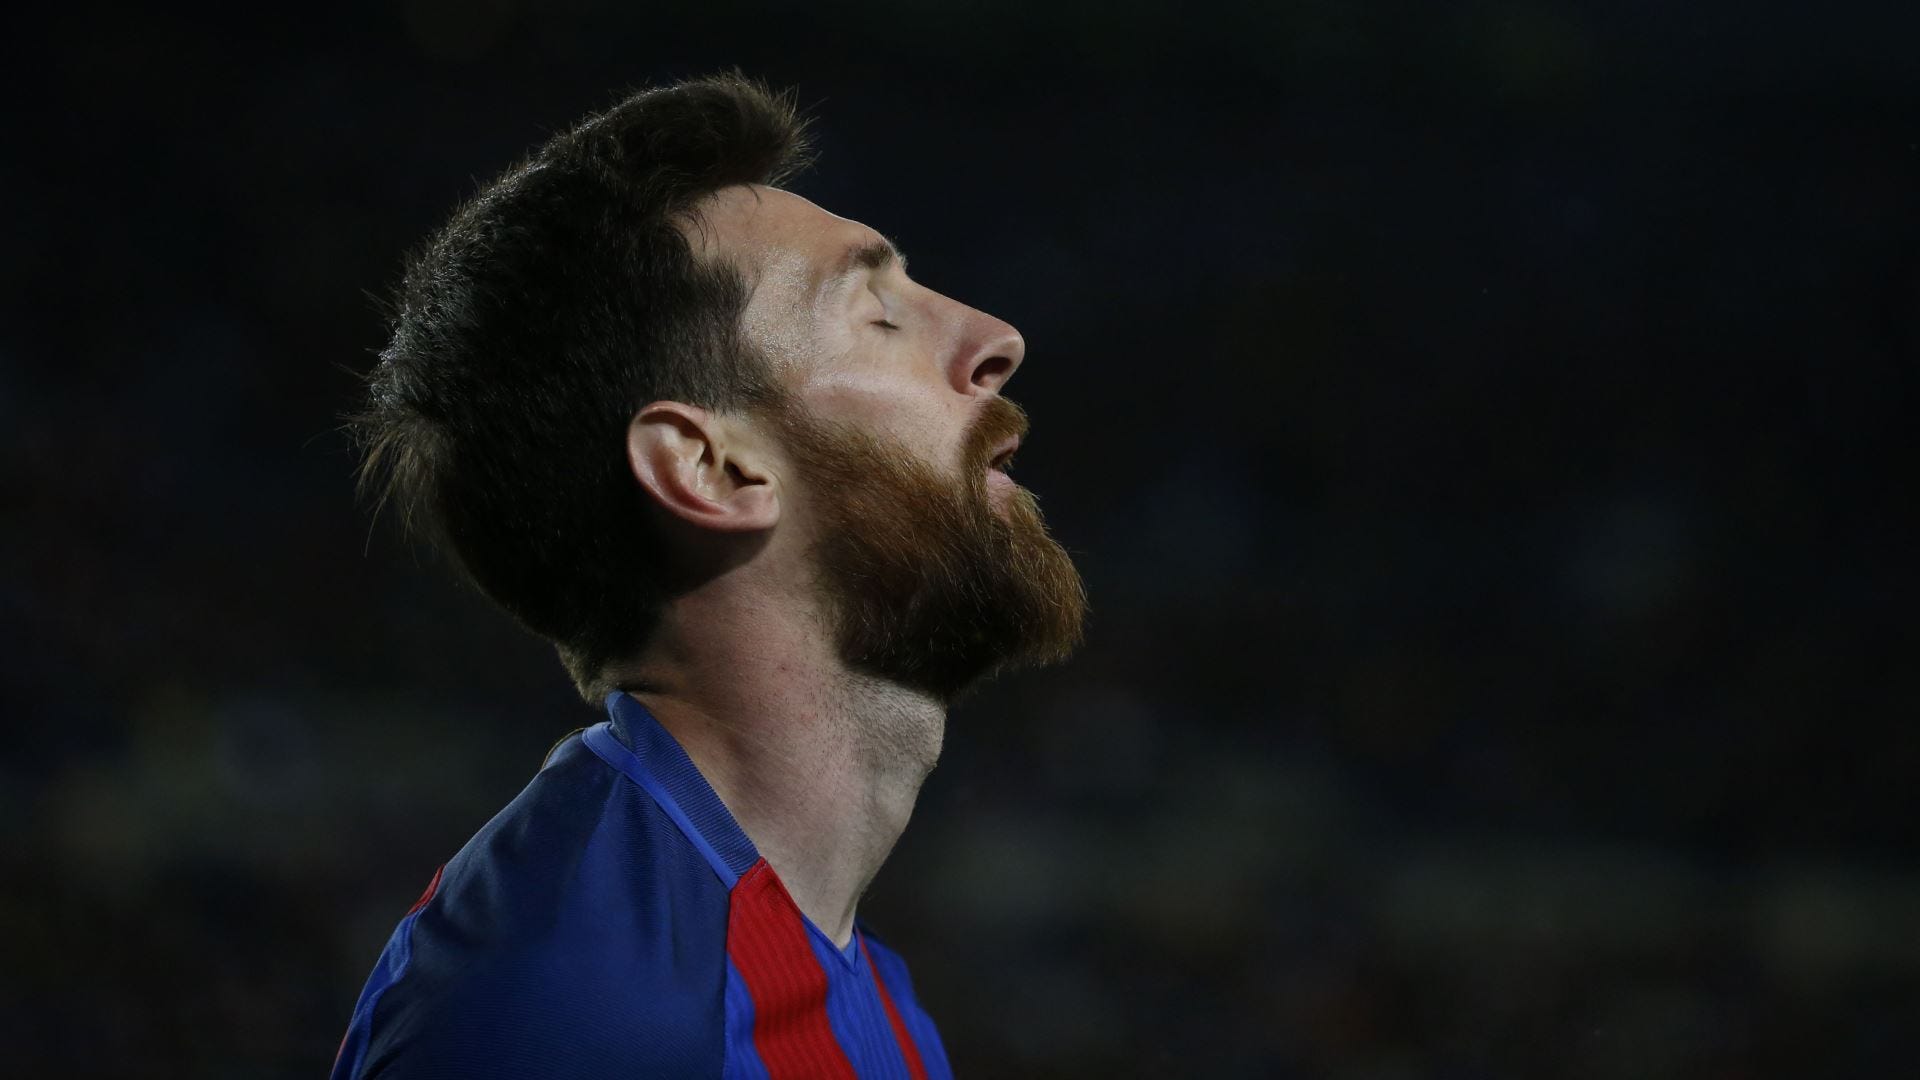 Messi record: Messi là một trong những cầu thủ vĩ đại nhất lịch sử bóng đá, và đã thiết lập rất nhiều kỷ lục trong sự nghiệp của mình. Hình ảnh này chắc chắn sẽ khiến bạn cảm thấy ngưỡng mộ và phấn khích với những thành tích của siêu sao Lionel Messi.